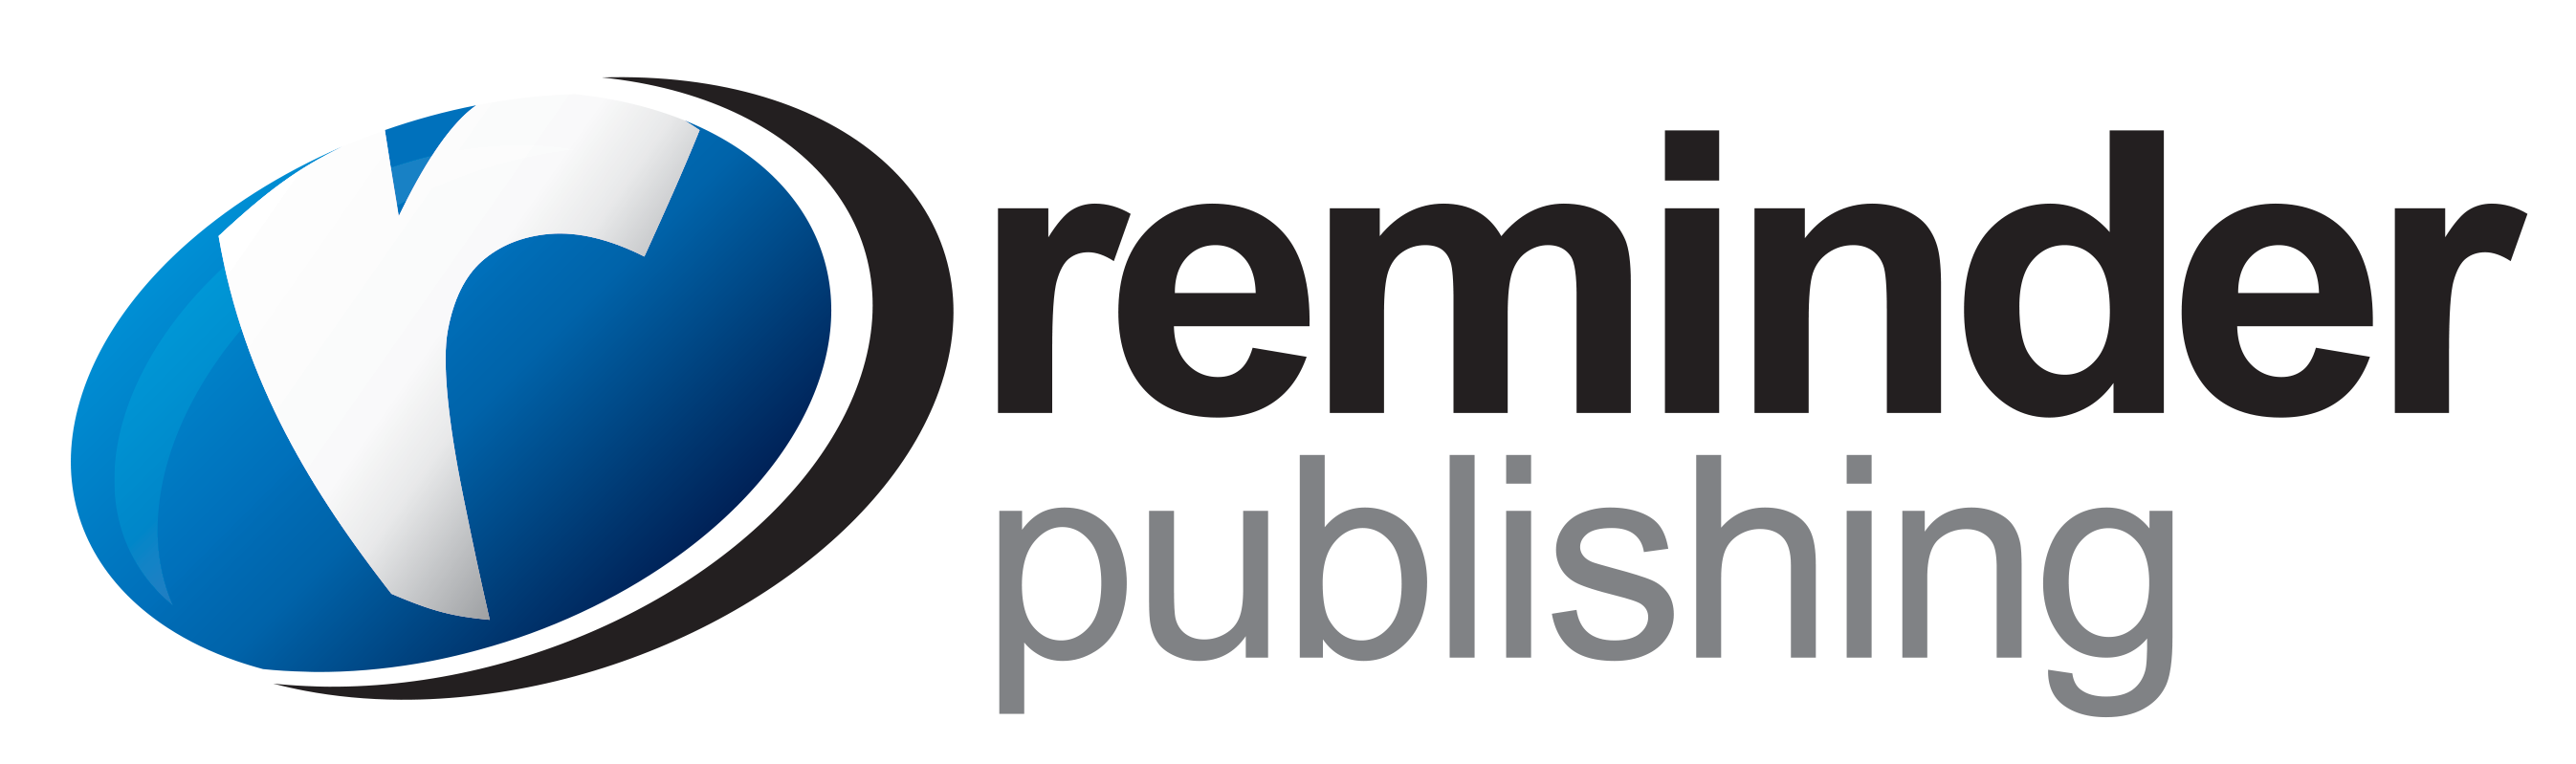 reminder_publishing